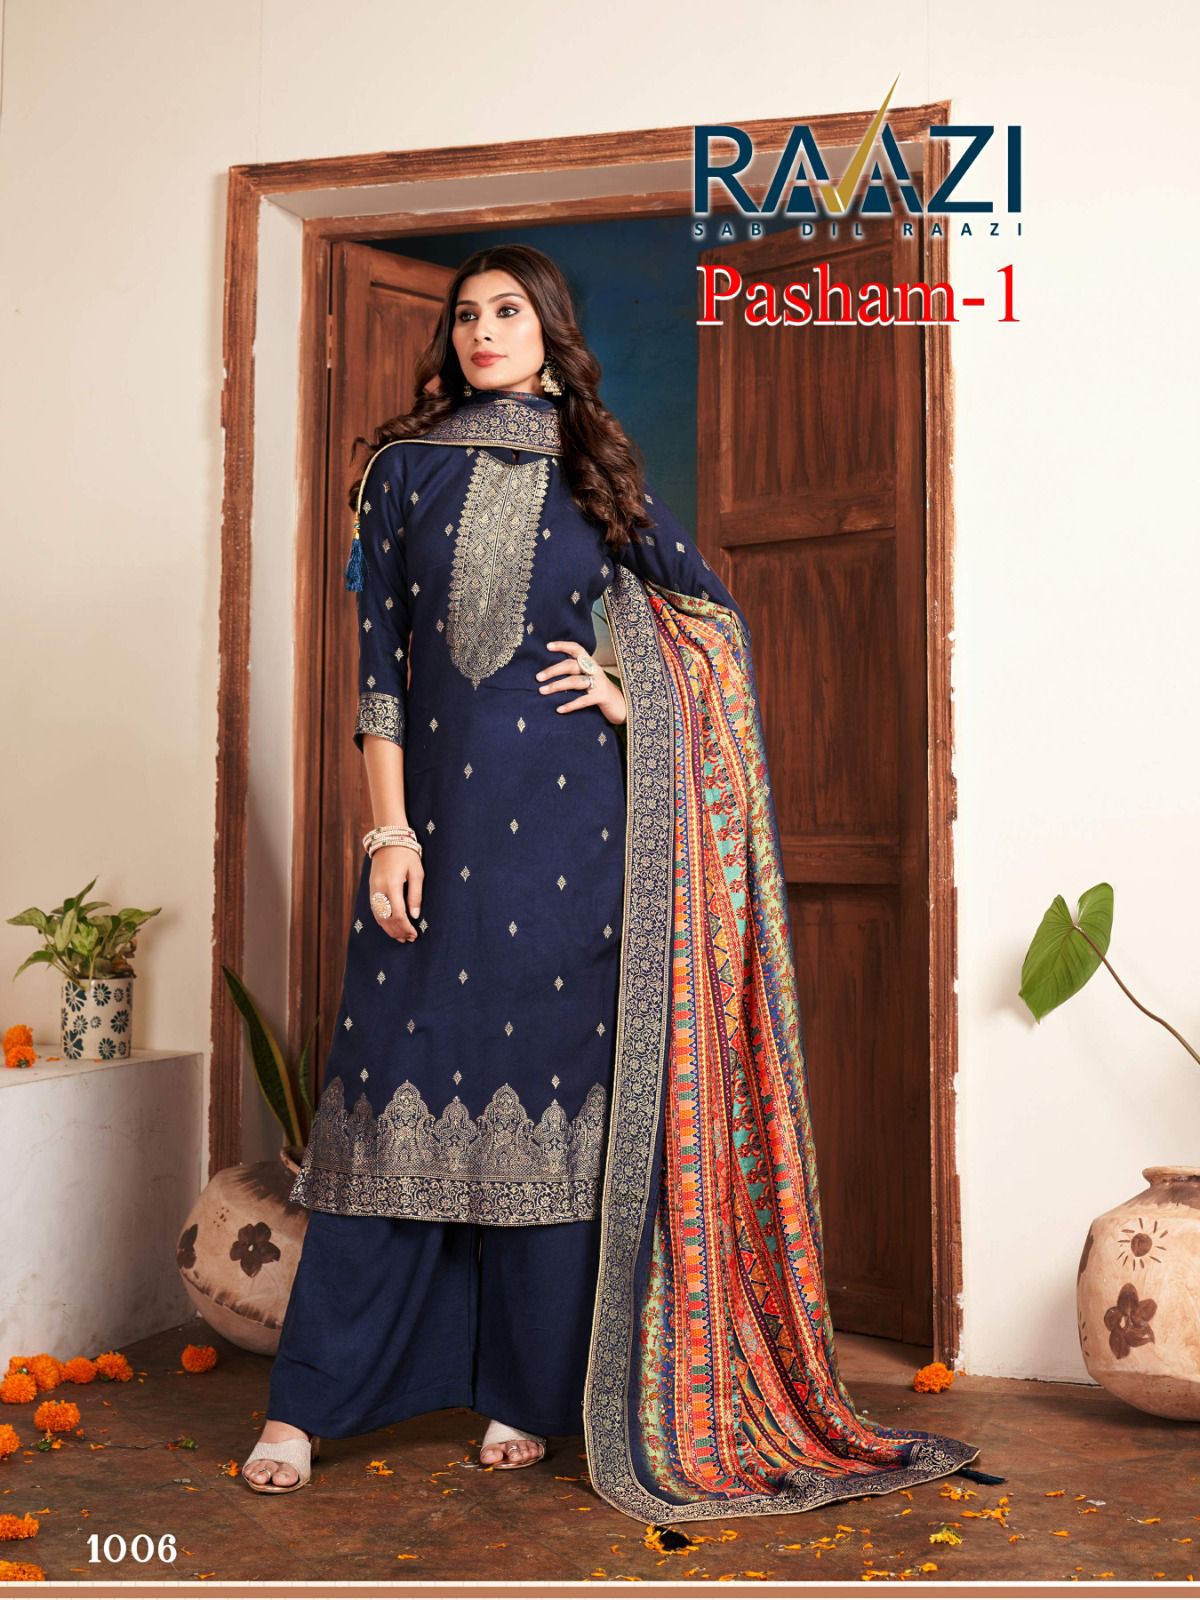 Pasham-1 Raazi Pashmina Suits